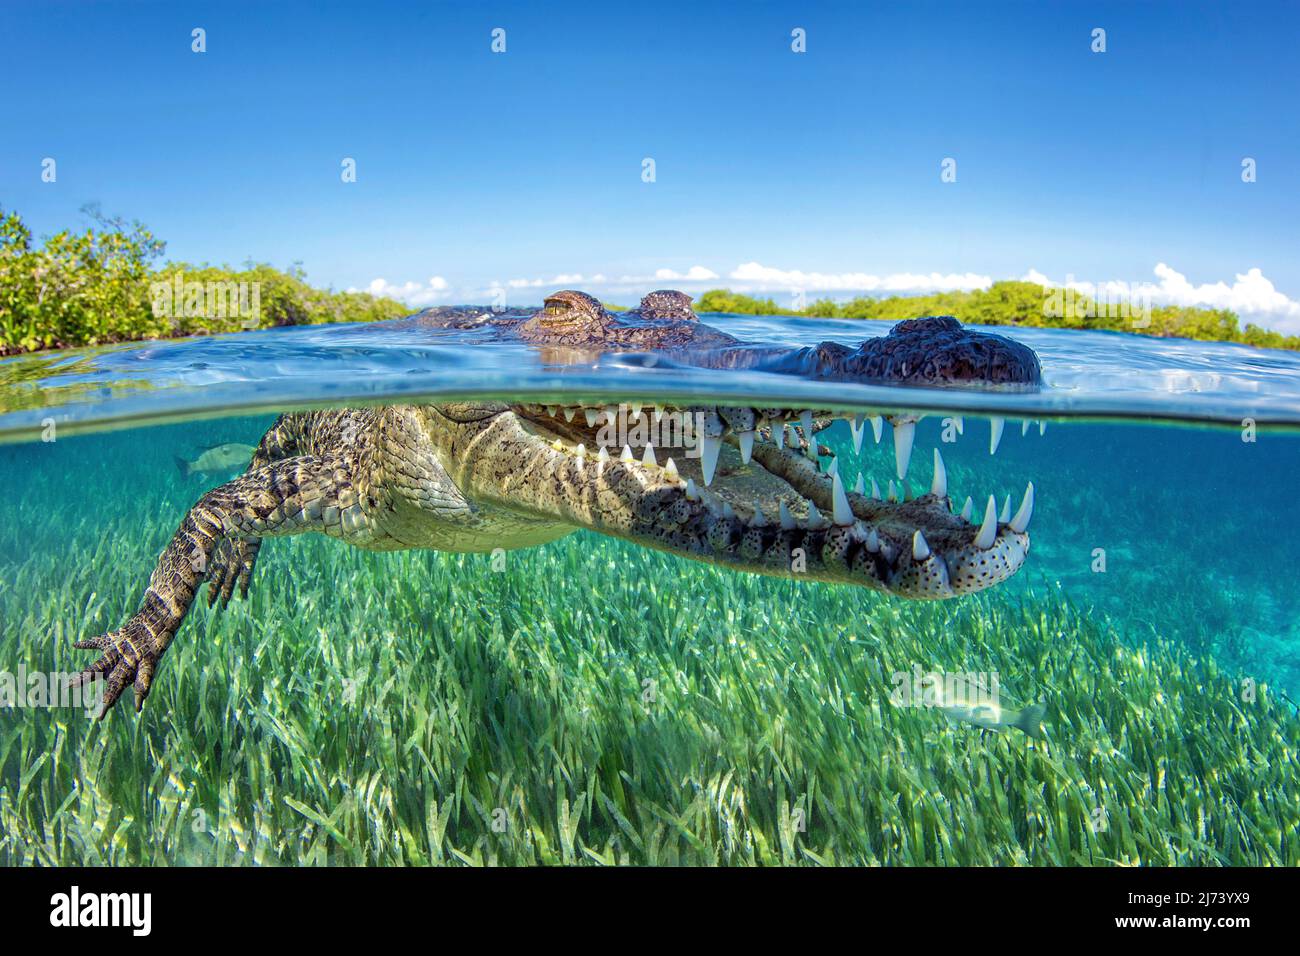 Cocodrilo americano (Crocodylus acutus), imagen dividida, sobre debajo, Jardines de la Reina, Cuba, Mar Caribe, Caribe Foto de stock